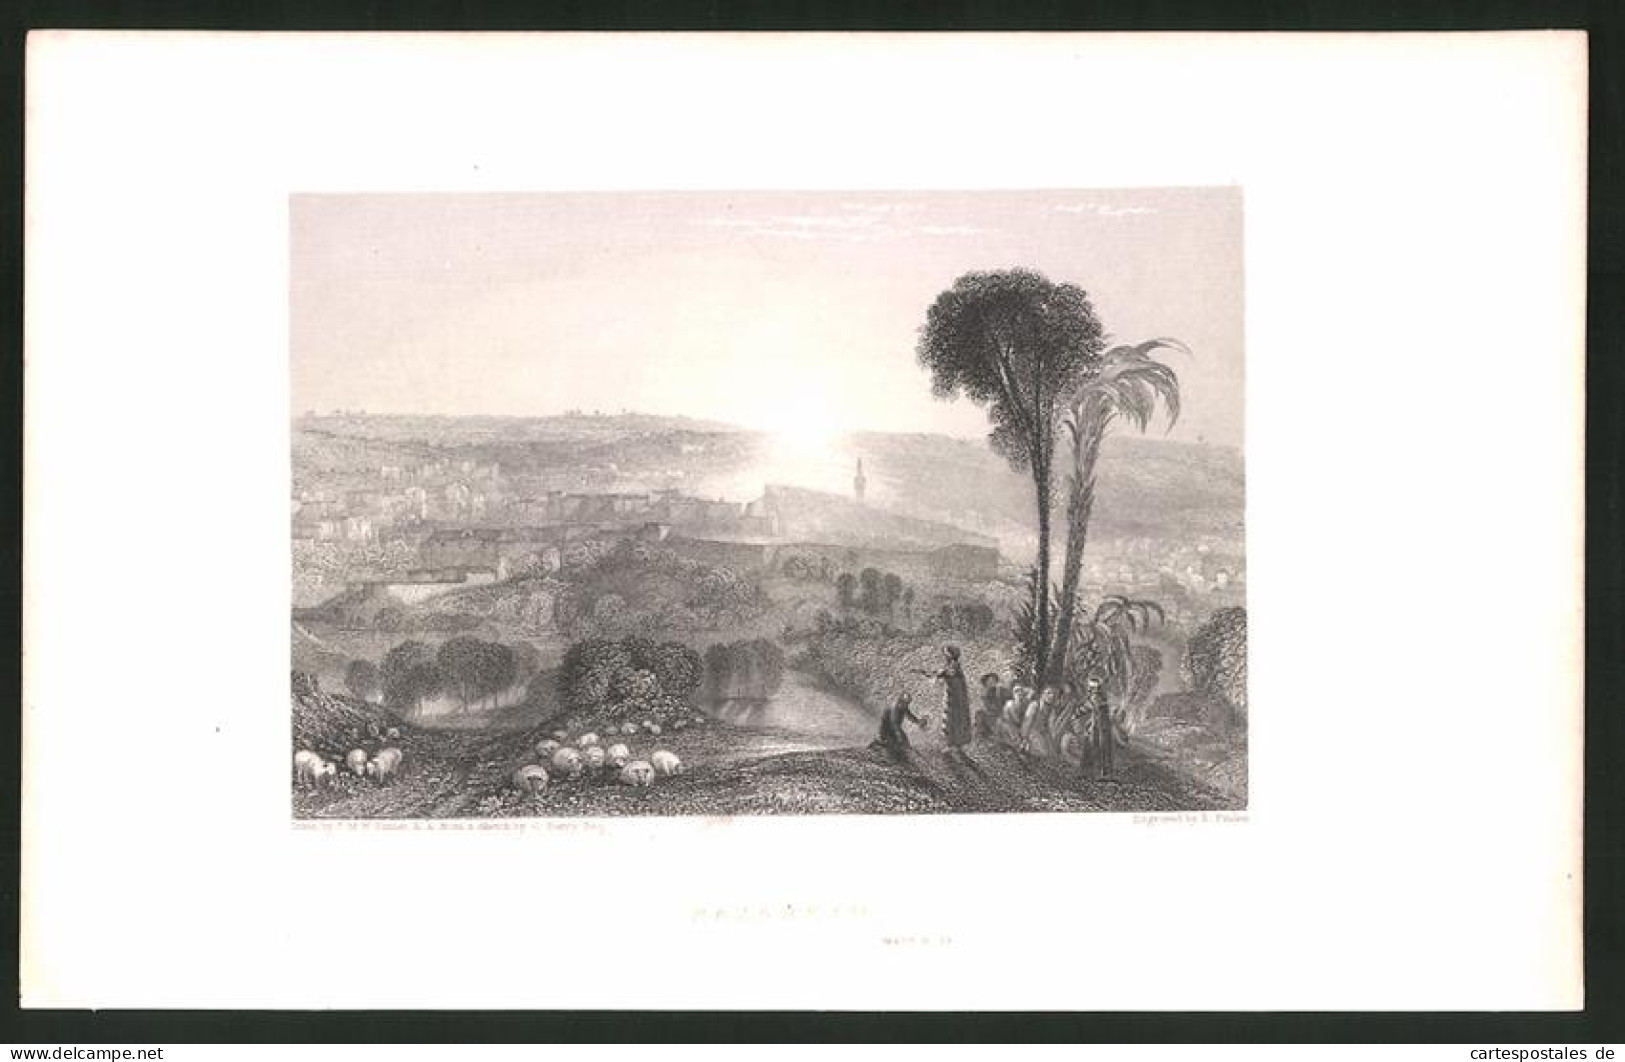 Stahlstich Nazareth, Stadt Im Sonnenuntergang, Stahlstich Von E. Finden Um 1835  - Stiche & Gravuren